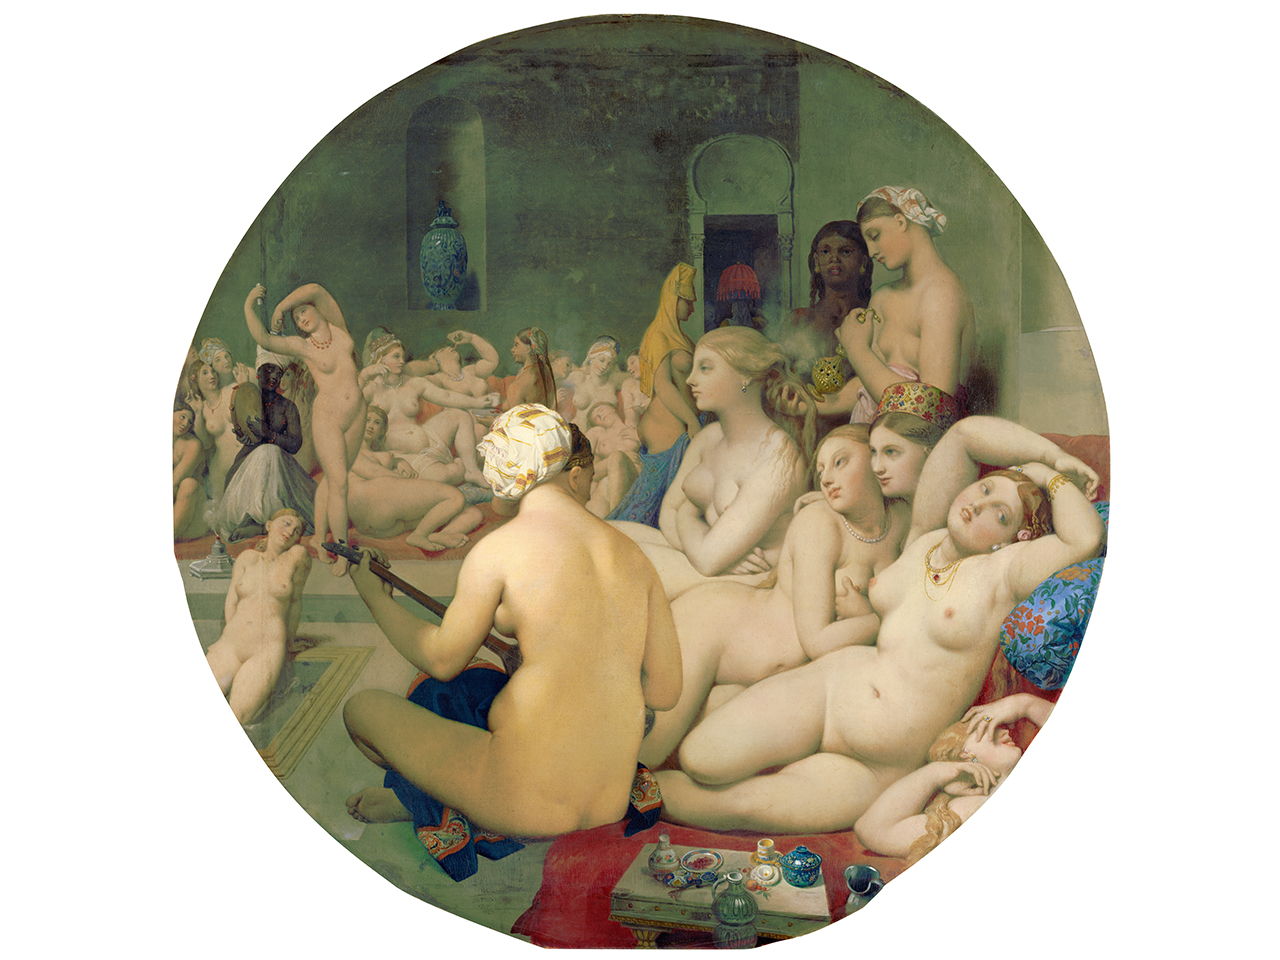 Tableau Le bain turc de Jean-Auguste-Dominique Ingres, conservé au Musée du Louvre